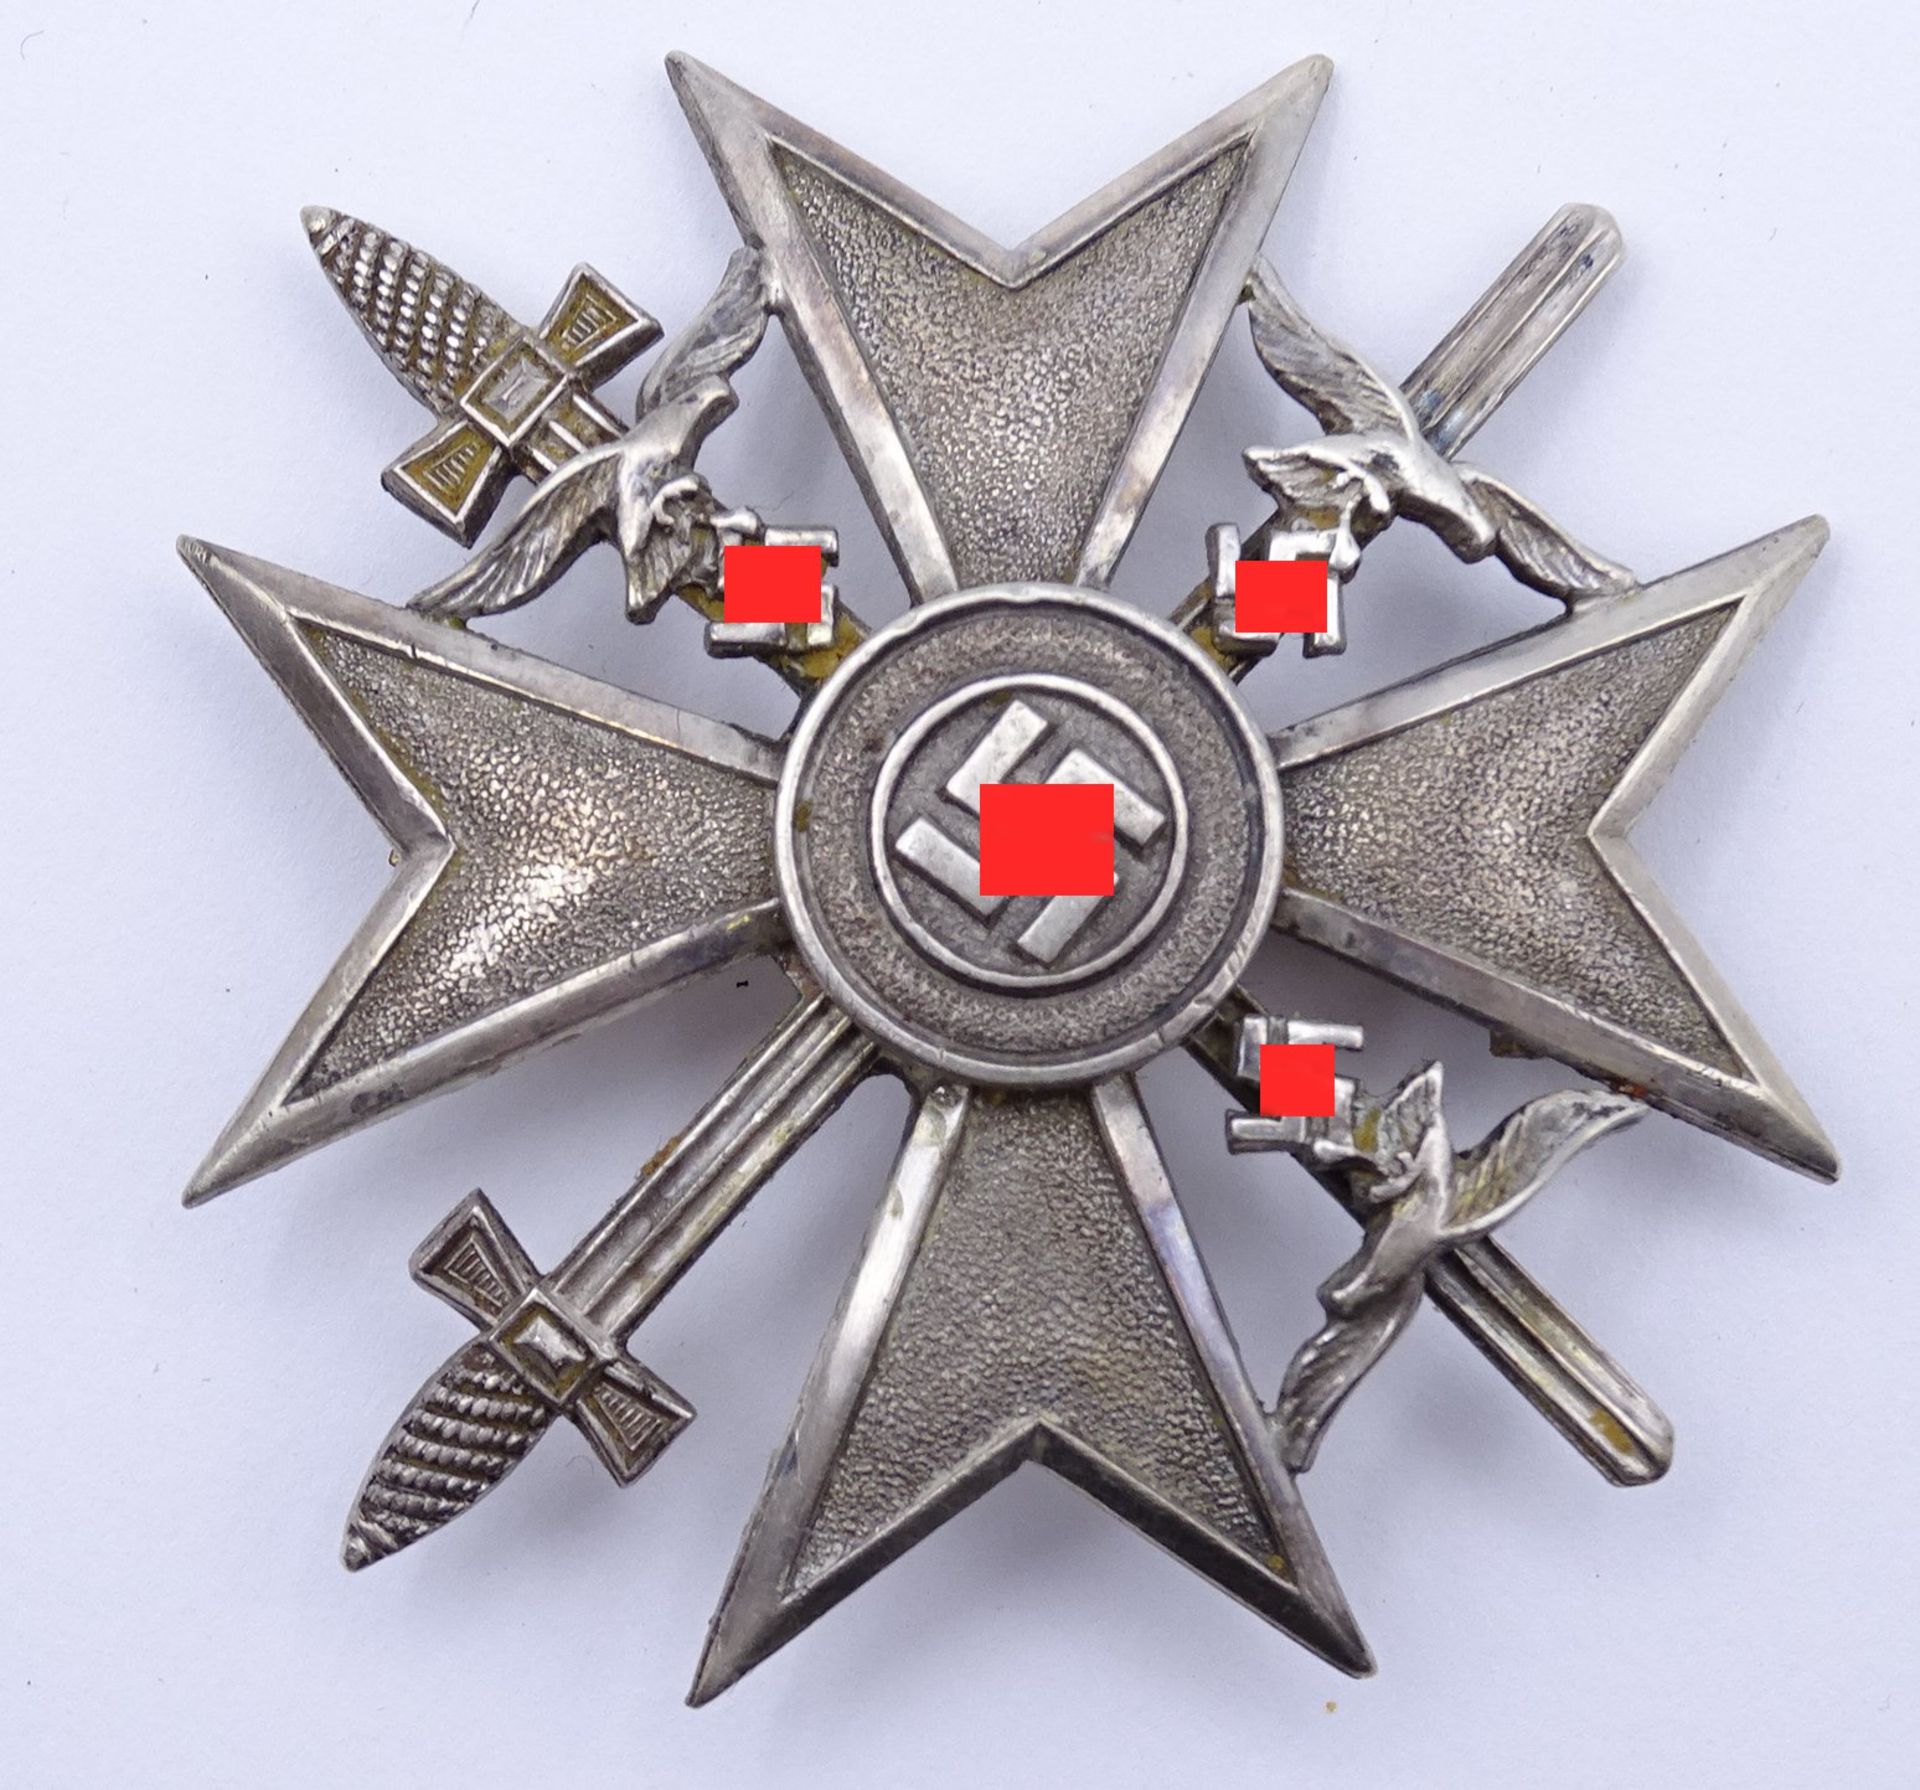 Spanienkreuz in Silber mit Schwertern, ein Adler fehlt, Original? Silber (gepr.)